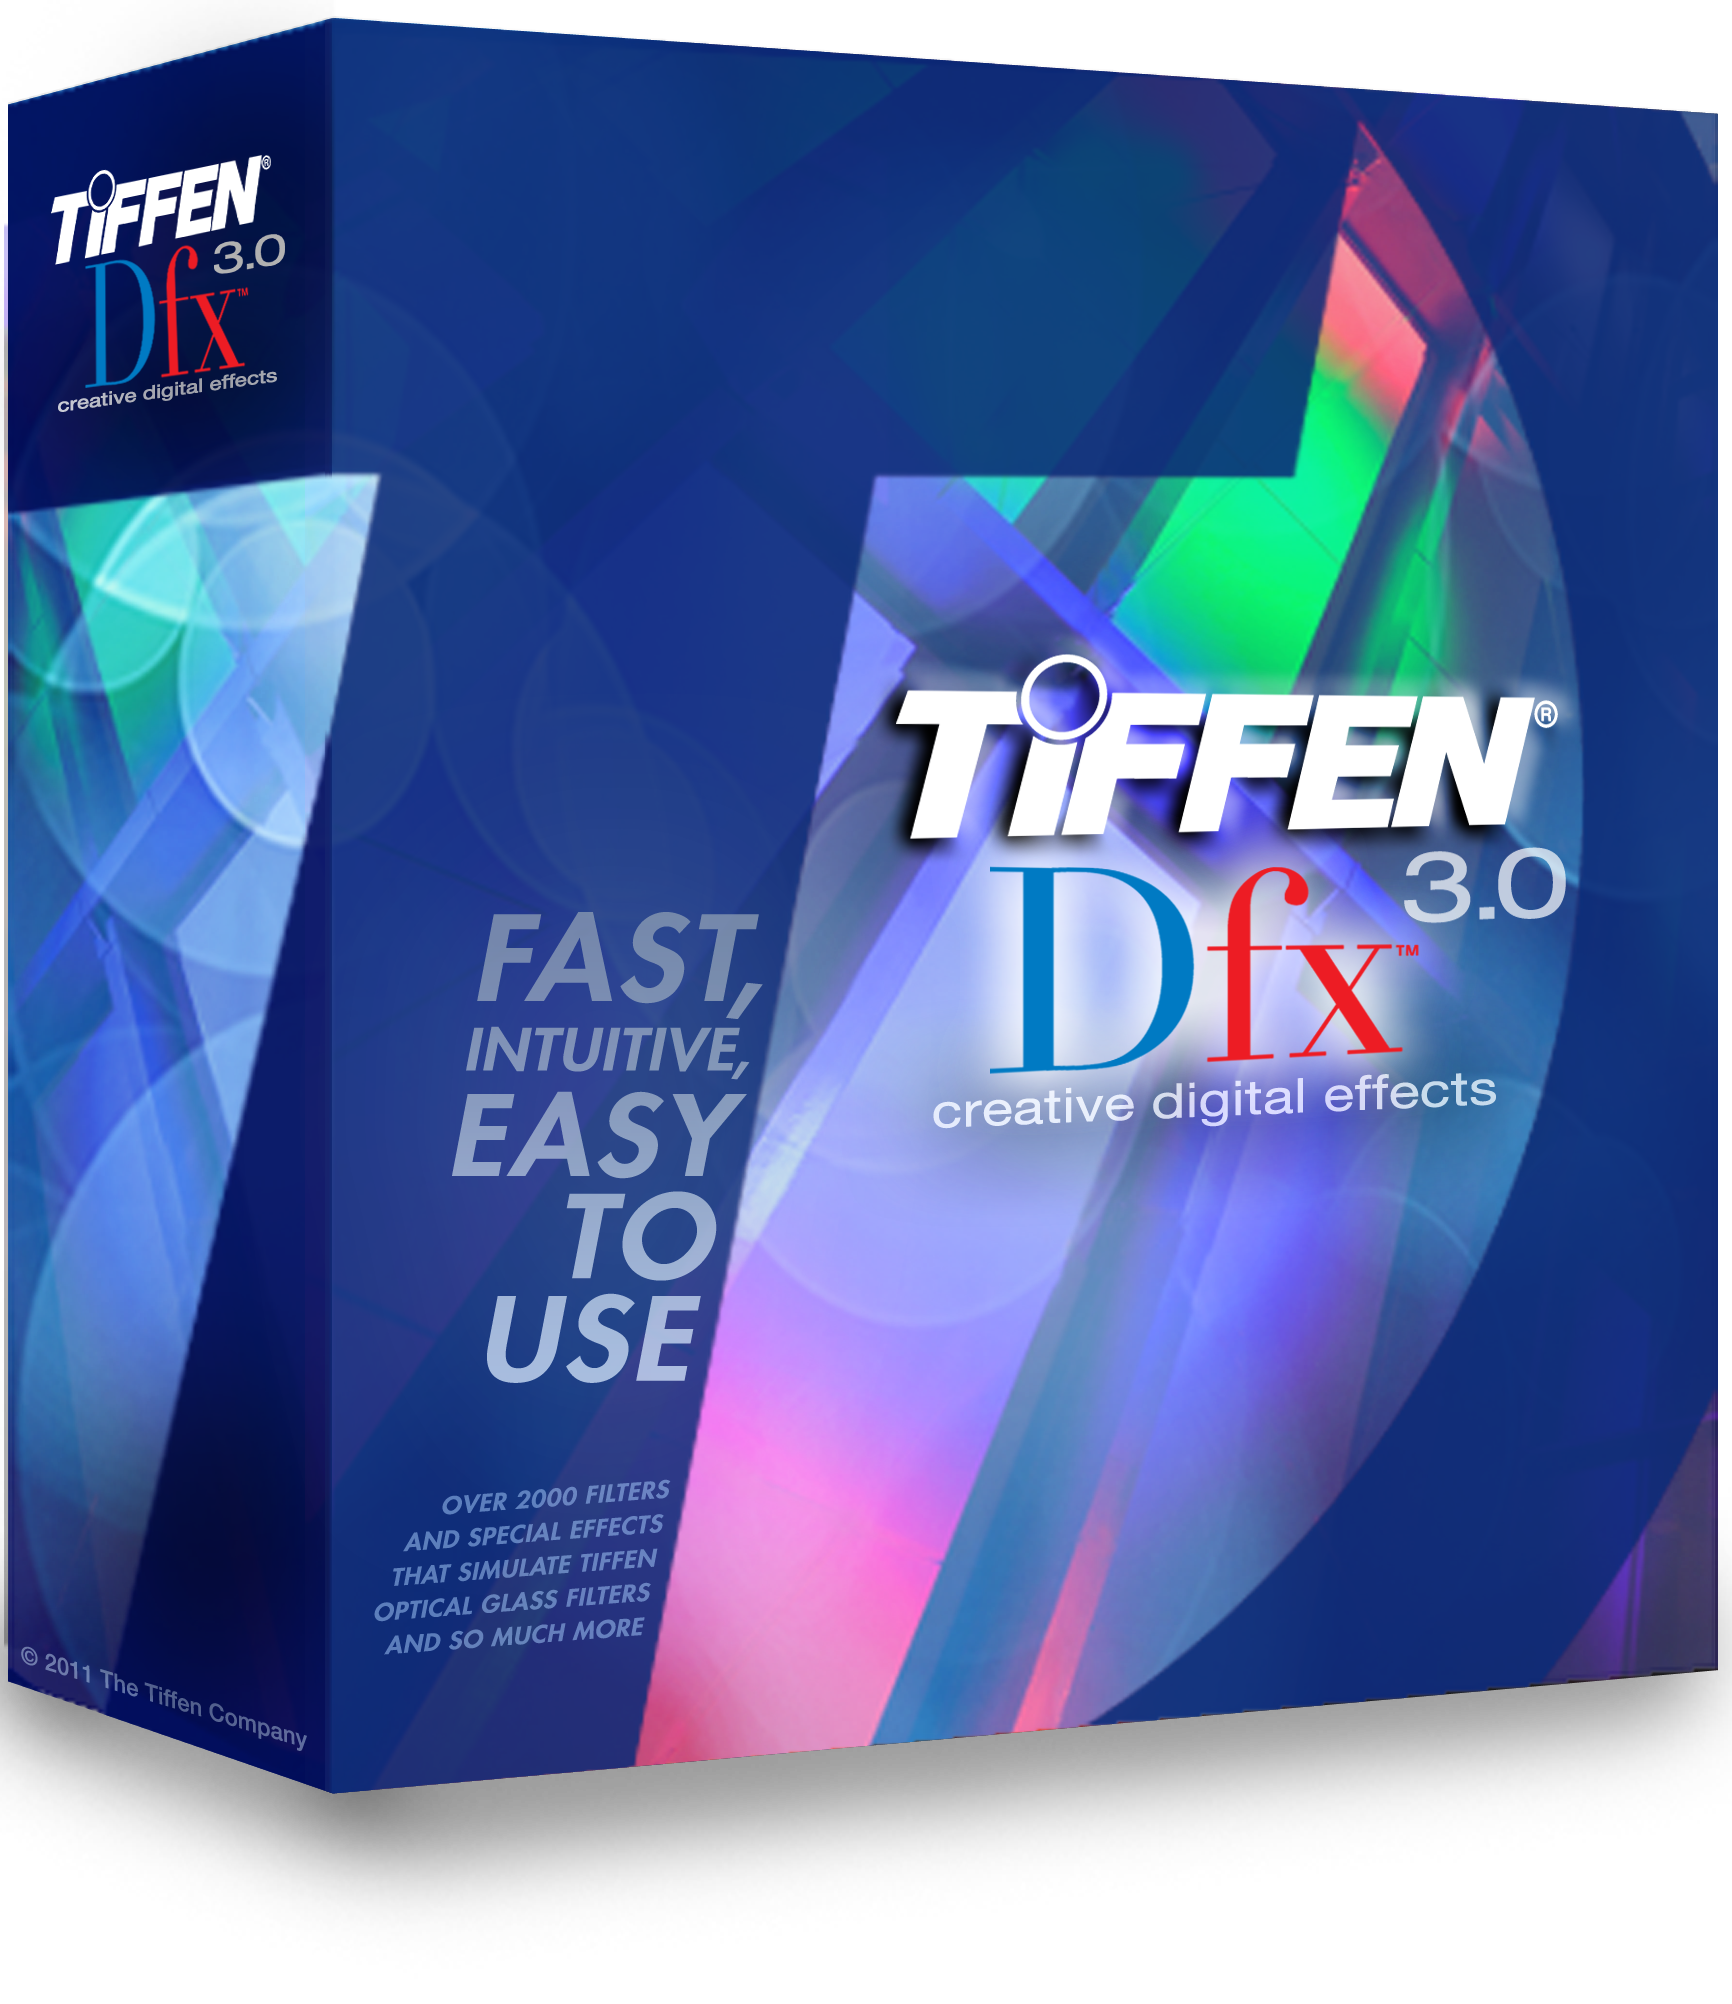 TIFFEN Dfx 3.0-Review